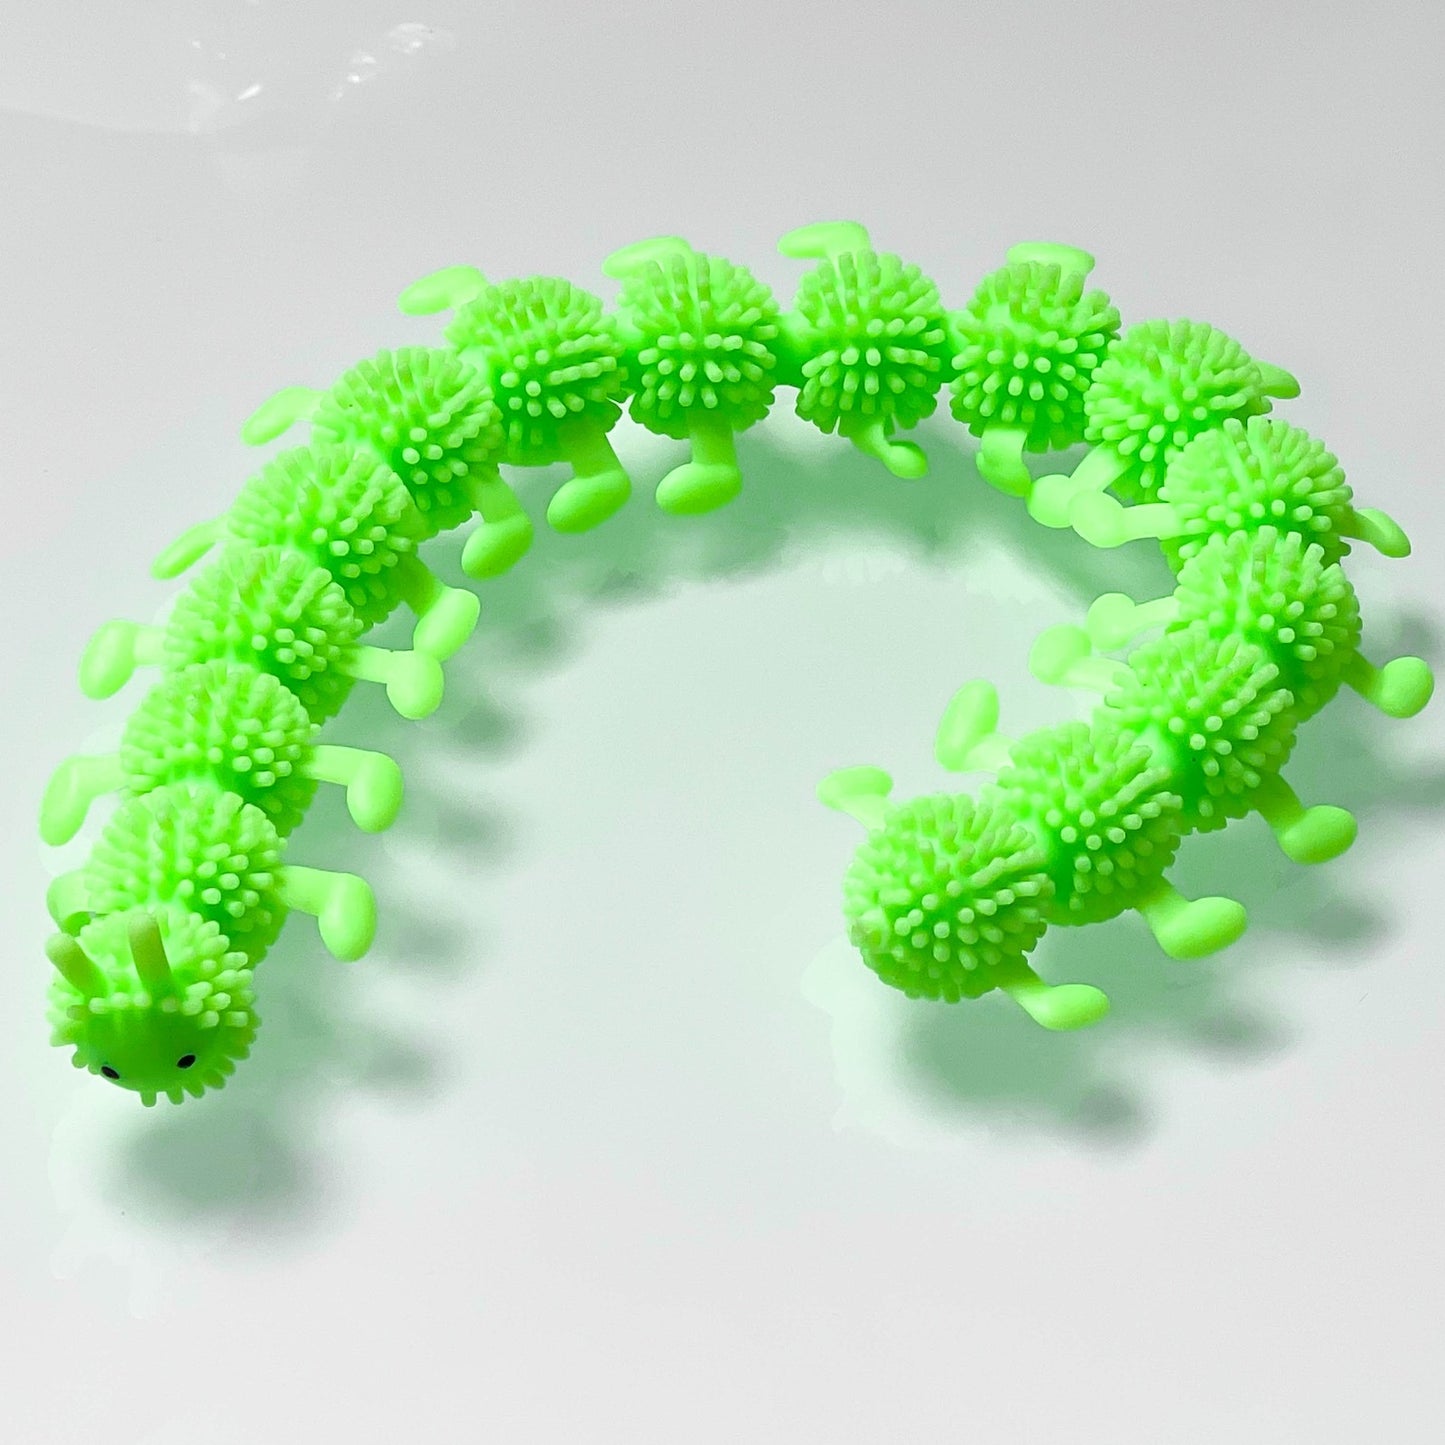 Wiggly caterpillar sensory tool